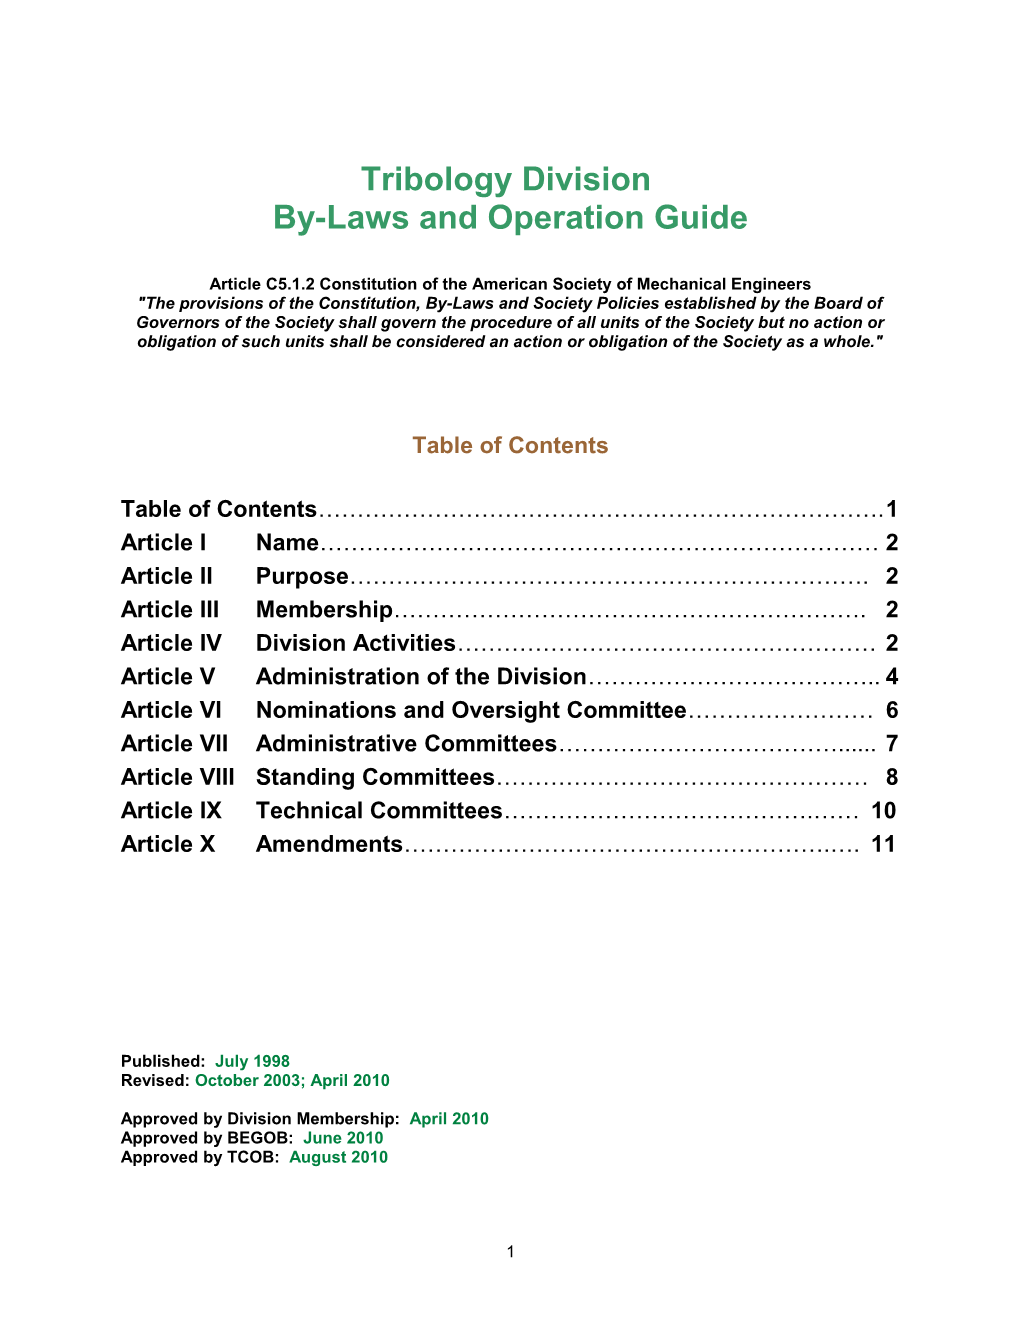 Tribology Division Bylaws